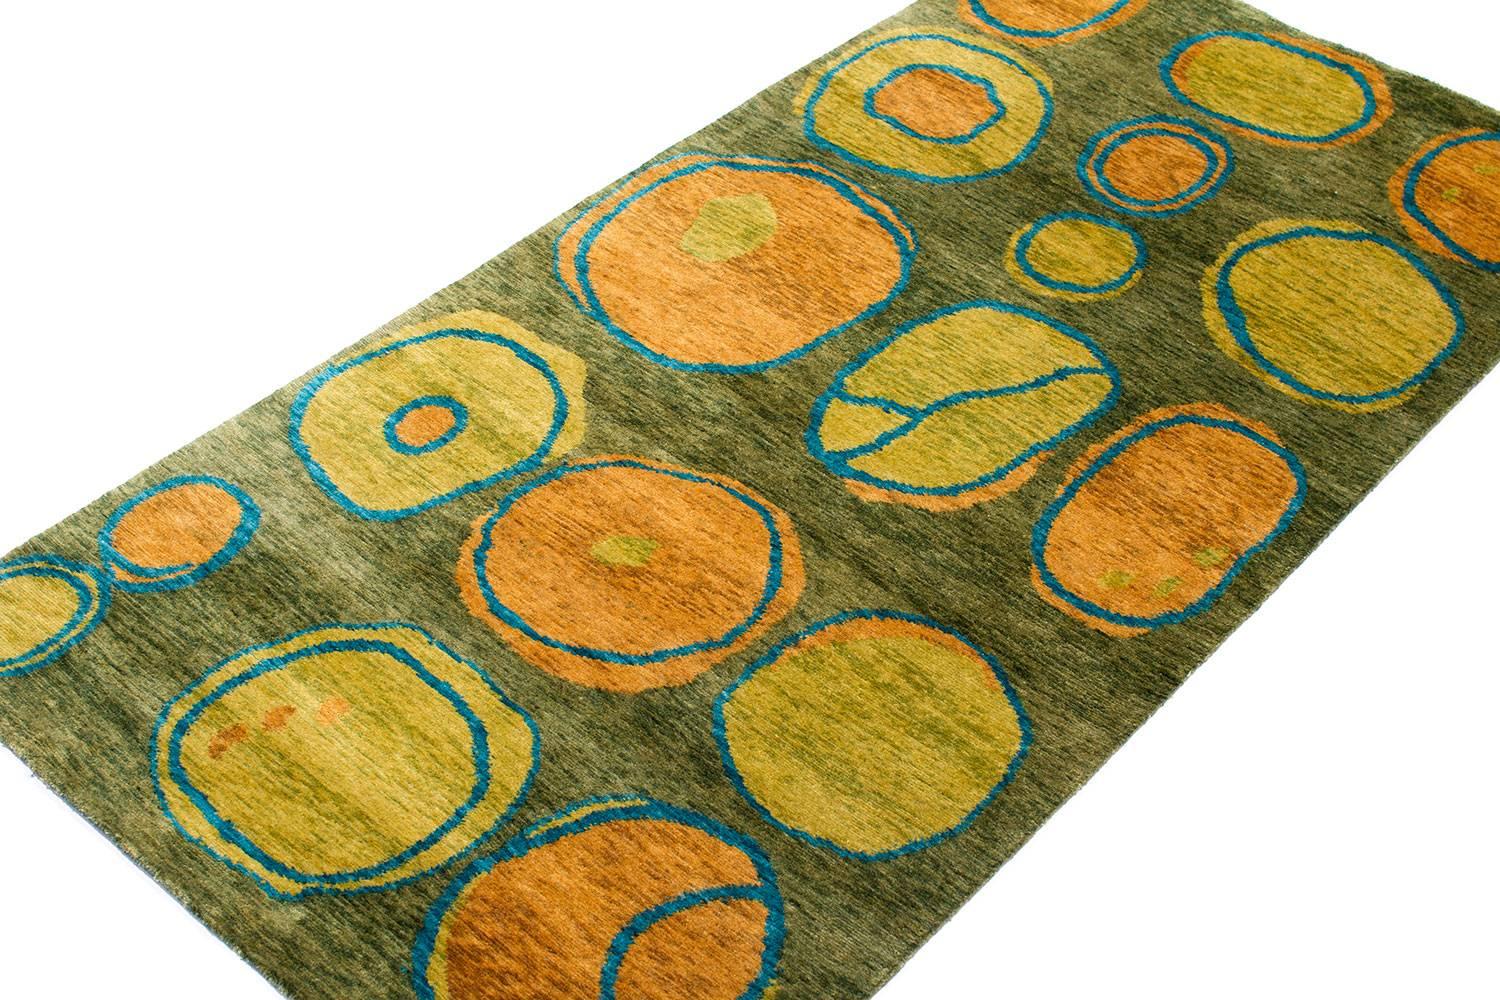 Dieser grasgrüne Teppich ist ein Originalentwurf von Joseph Carini mit dem Titel 